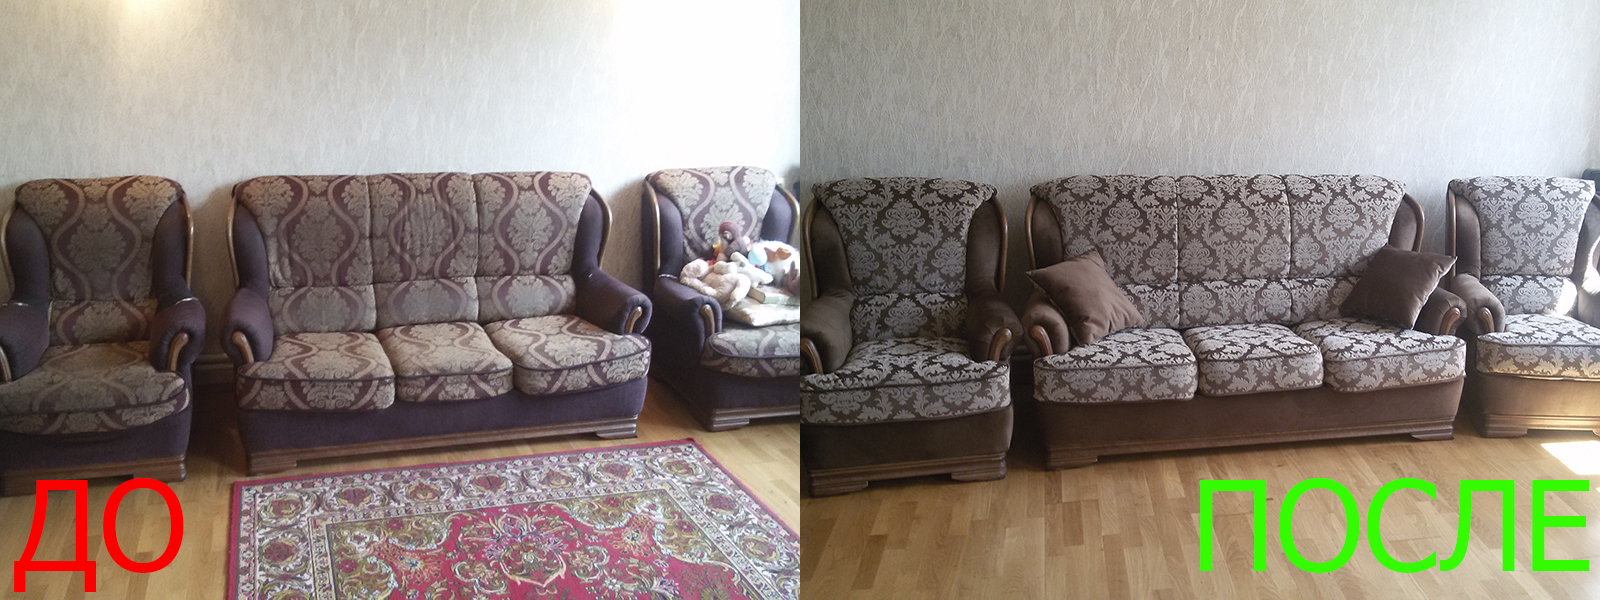 Перетяжка мягкой мебели в Симферополе - разумная стоимость, расчет по фото, высокое качество работы